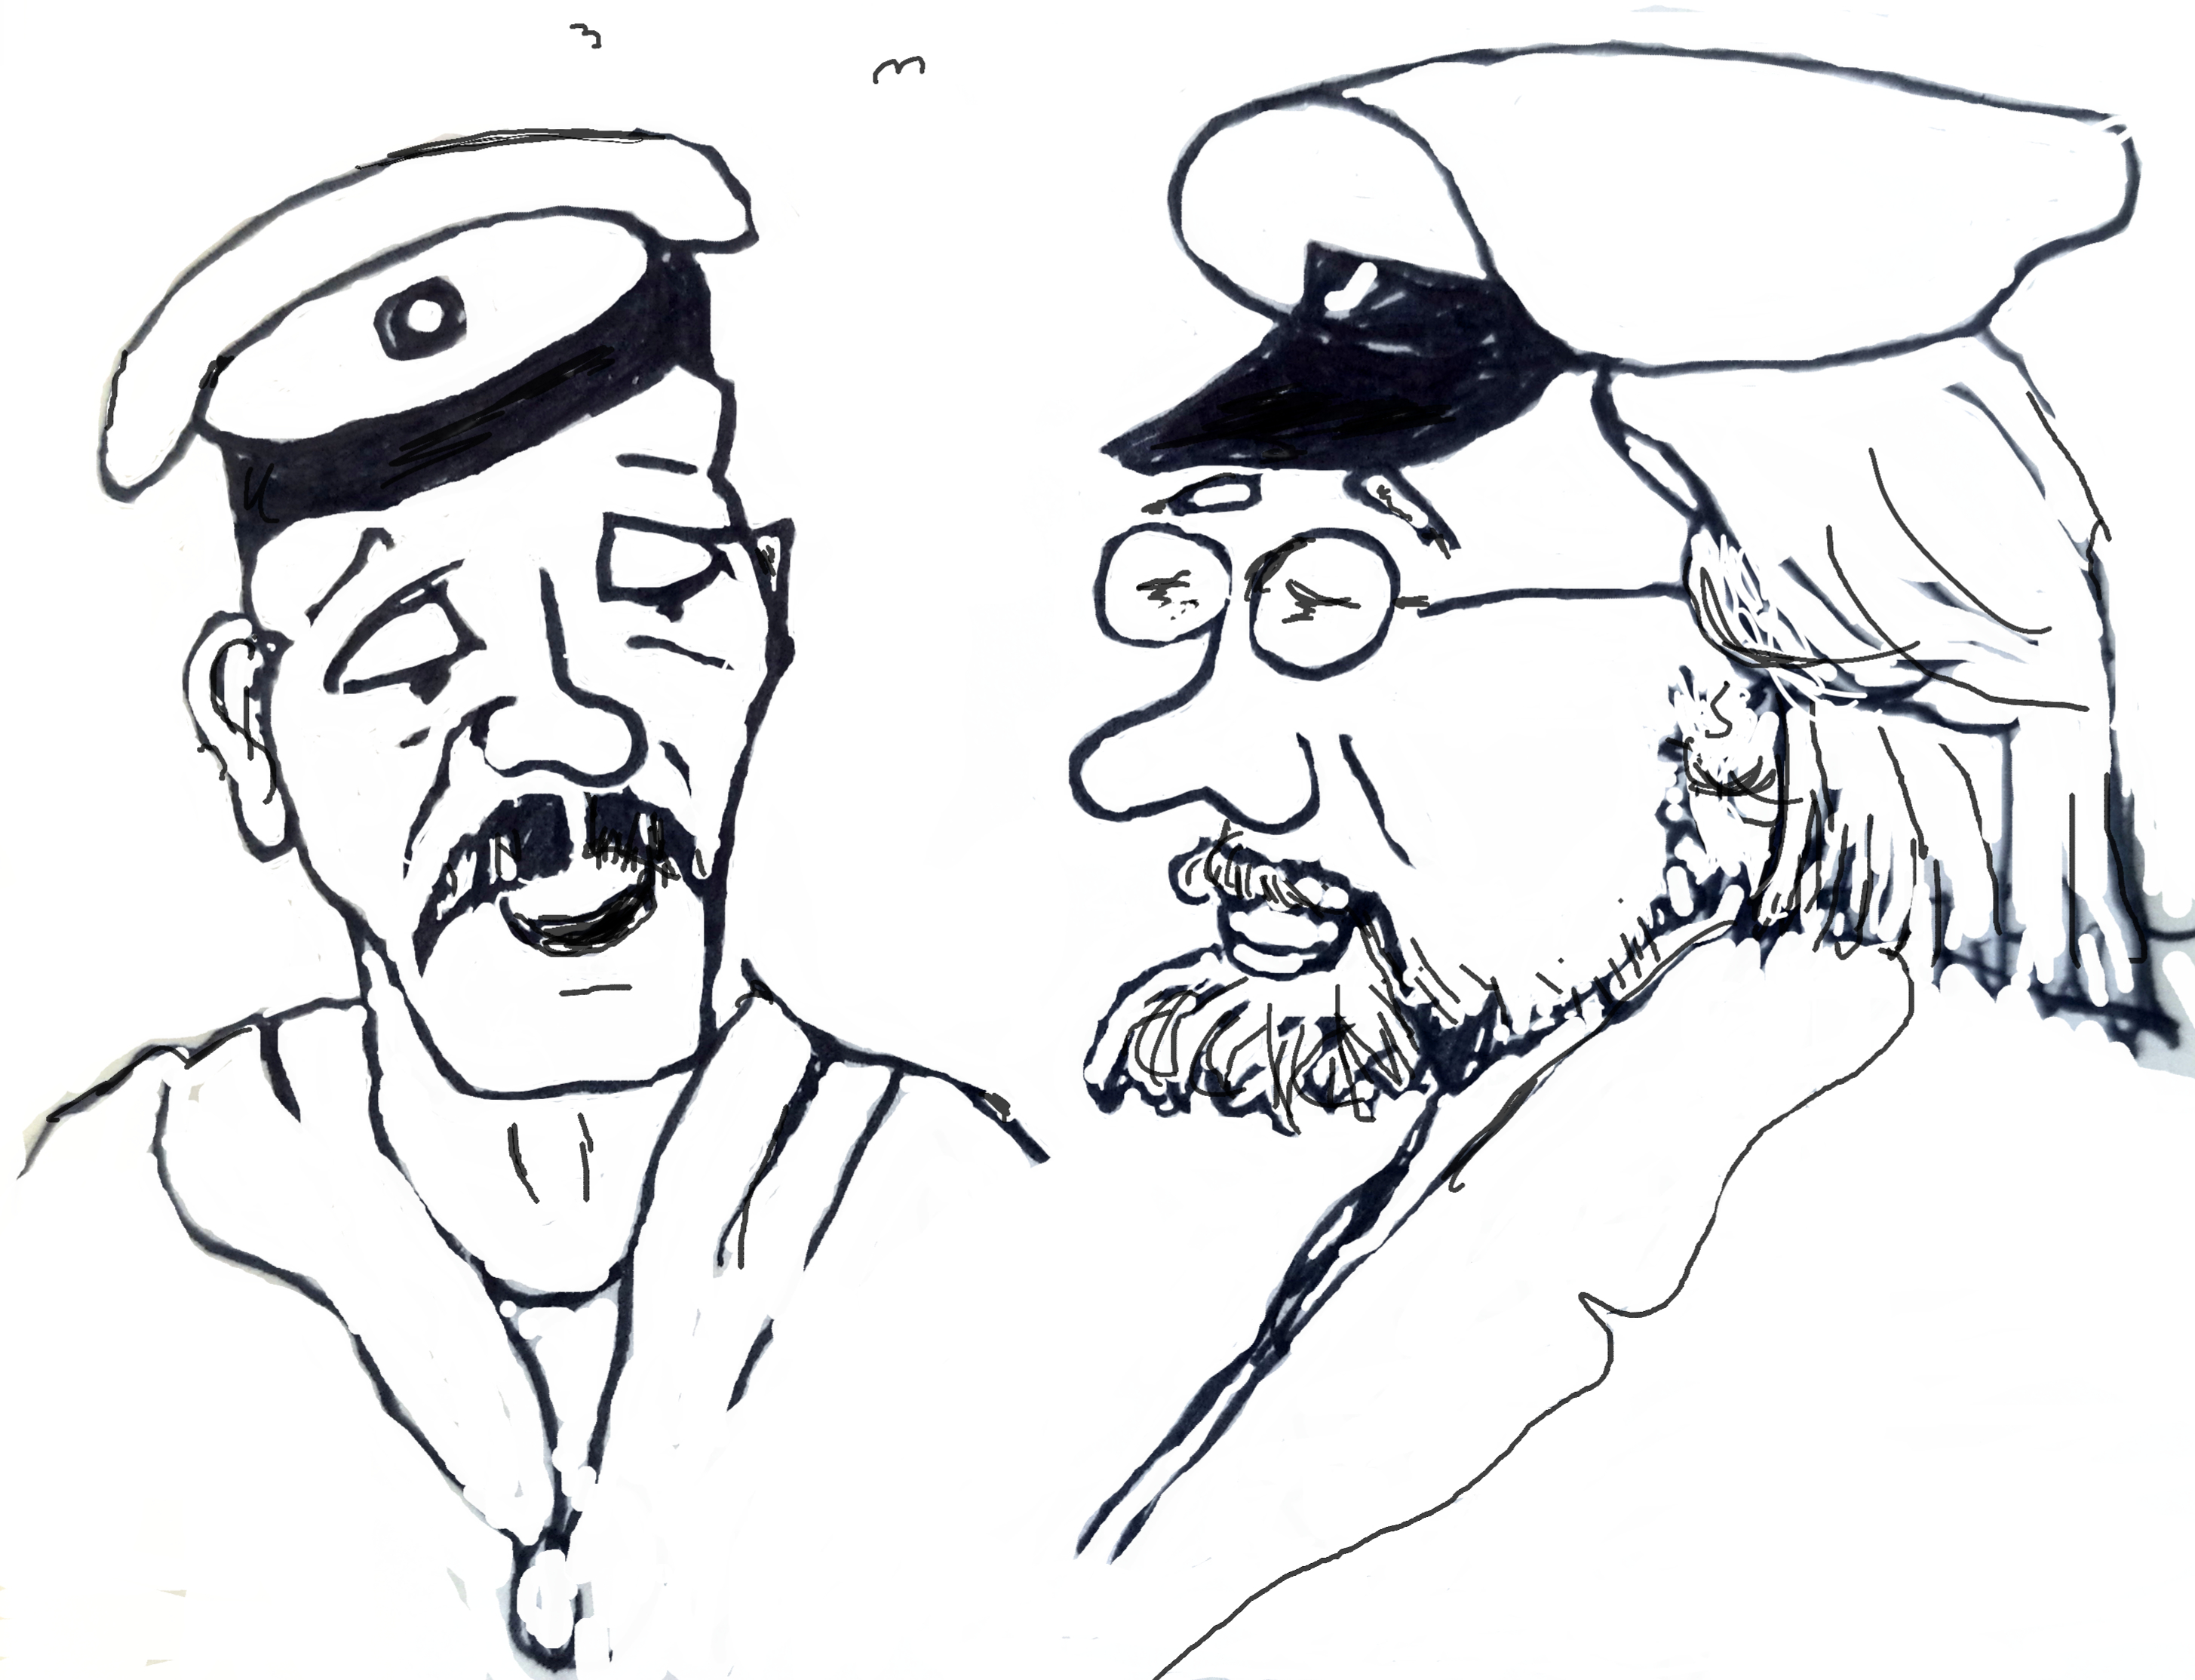 Sketch av to herrer med hatt, grunnleggerne av Bryggepraten og Bryggekanten forlag